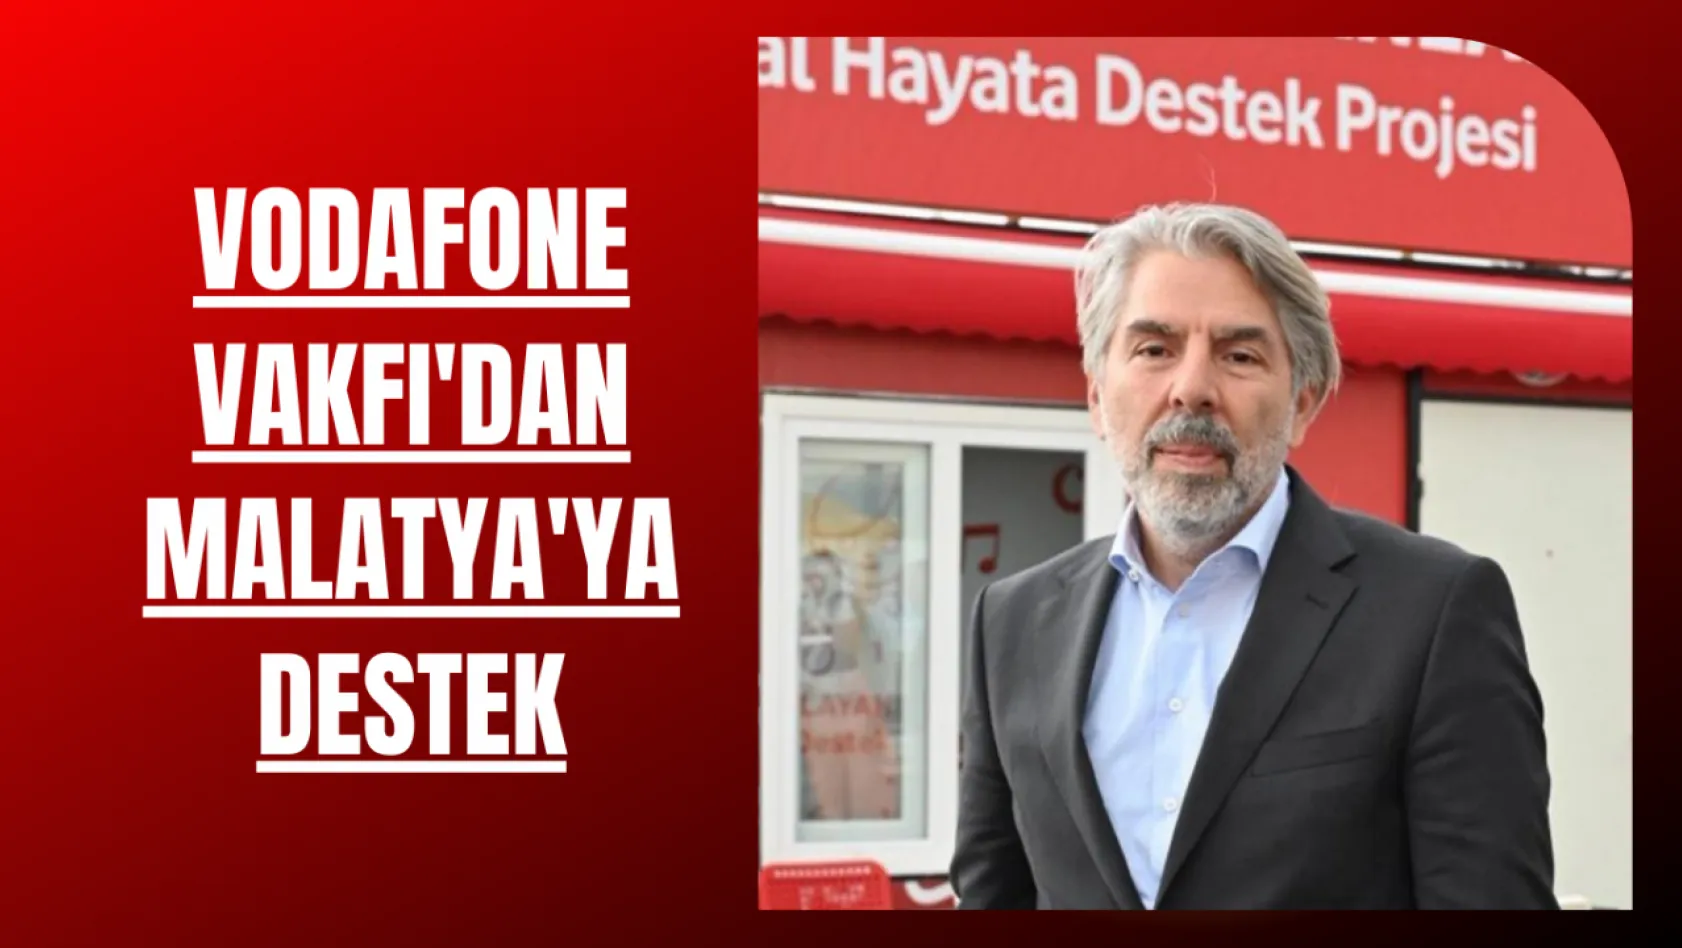 Vodafone Vakfı'dan Malatya'ya destek